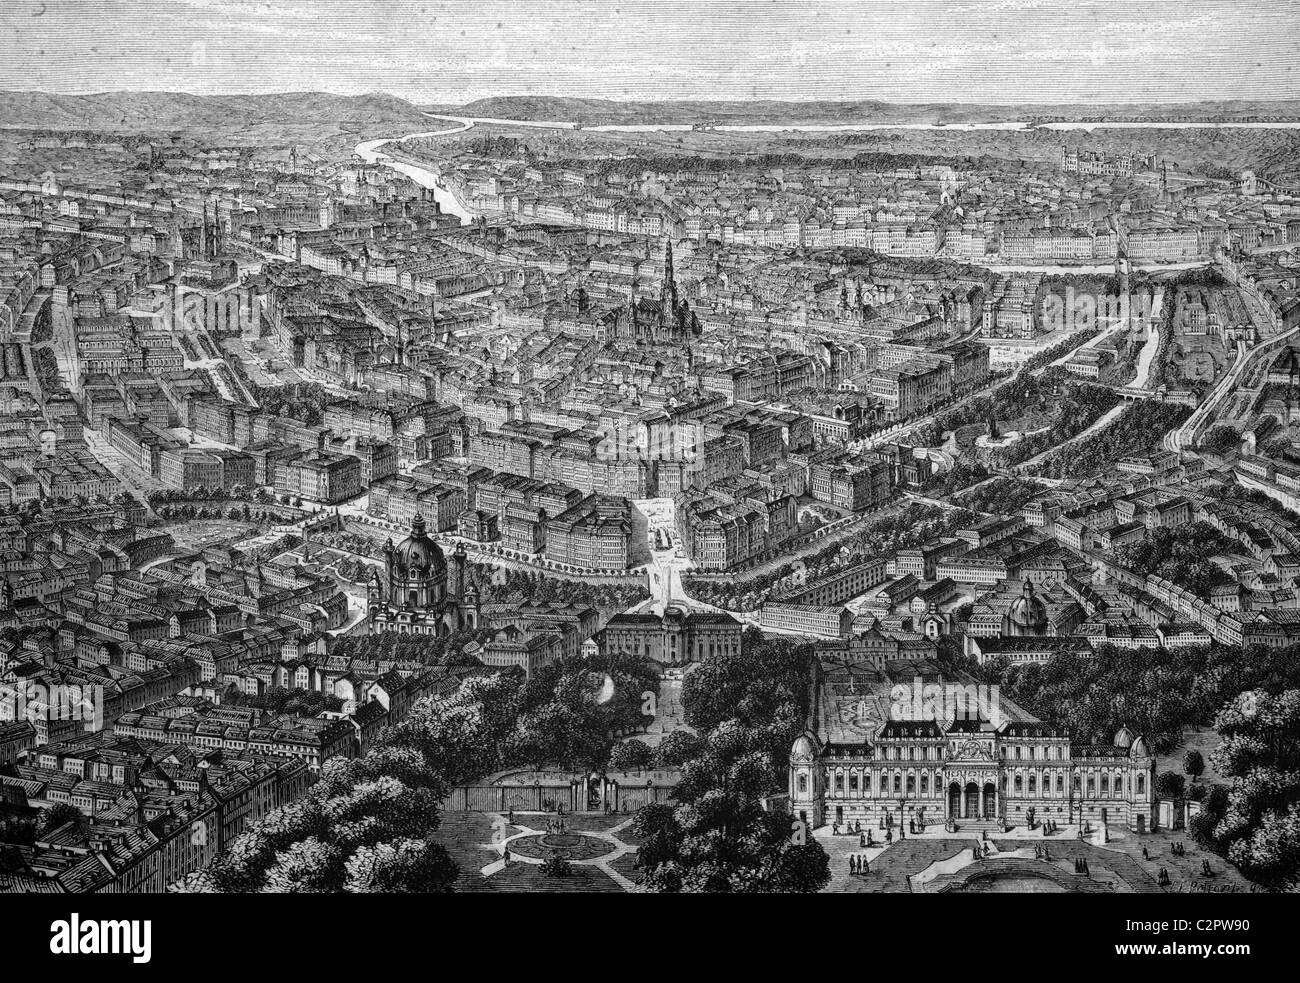 Vista de Viena, Austria, ilustración histórica, alrededor de 1886 Foto de stock